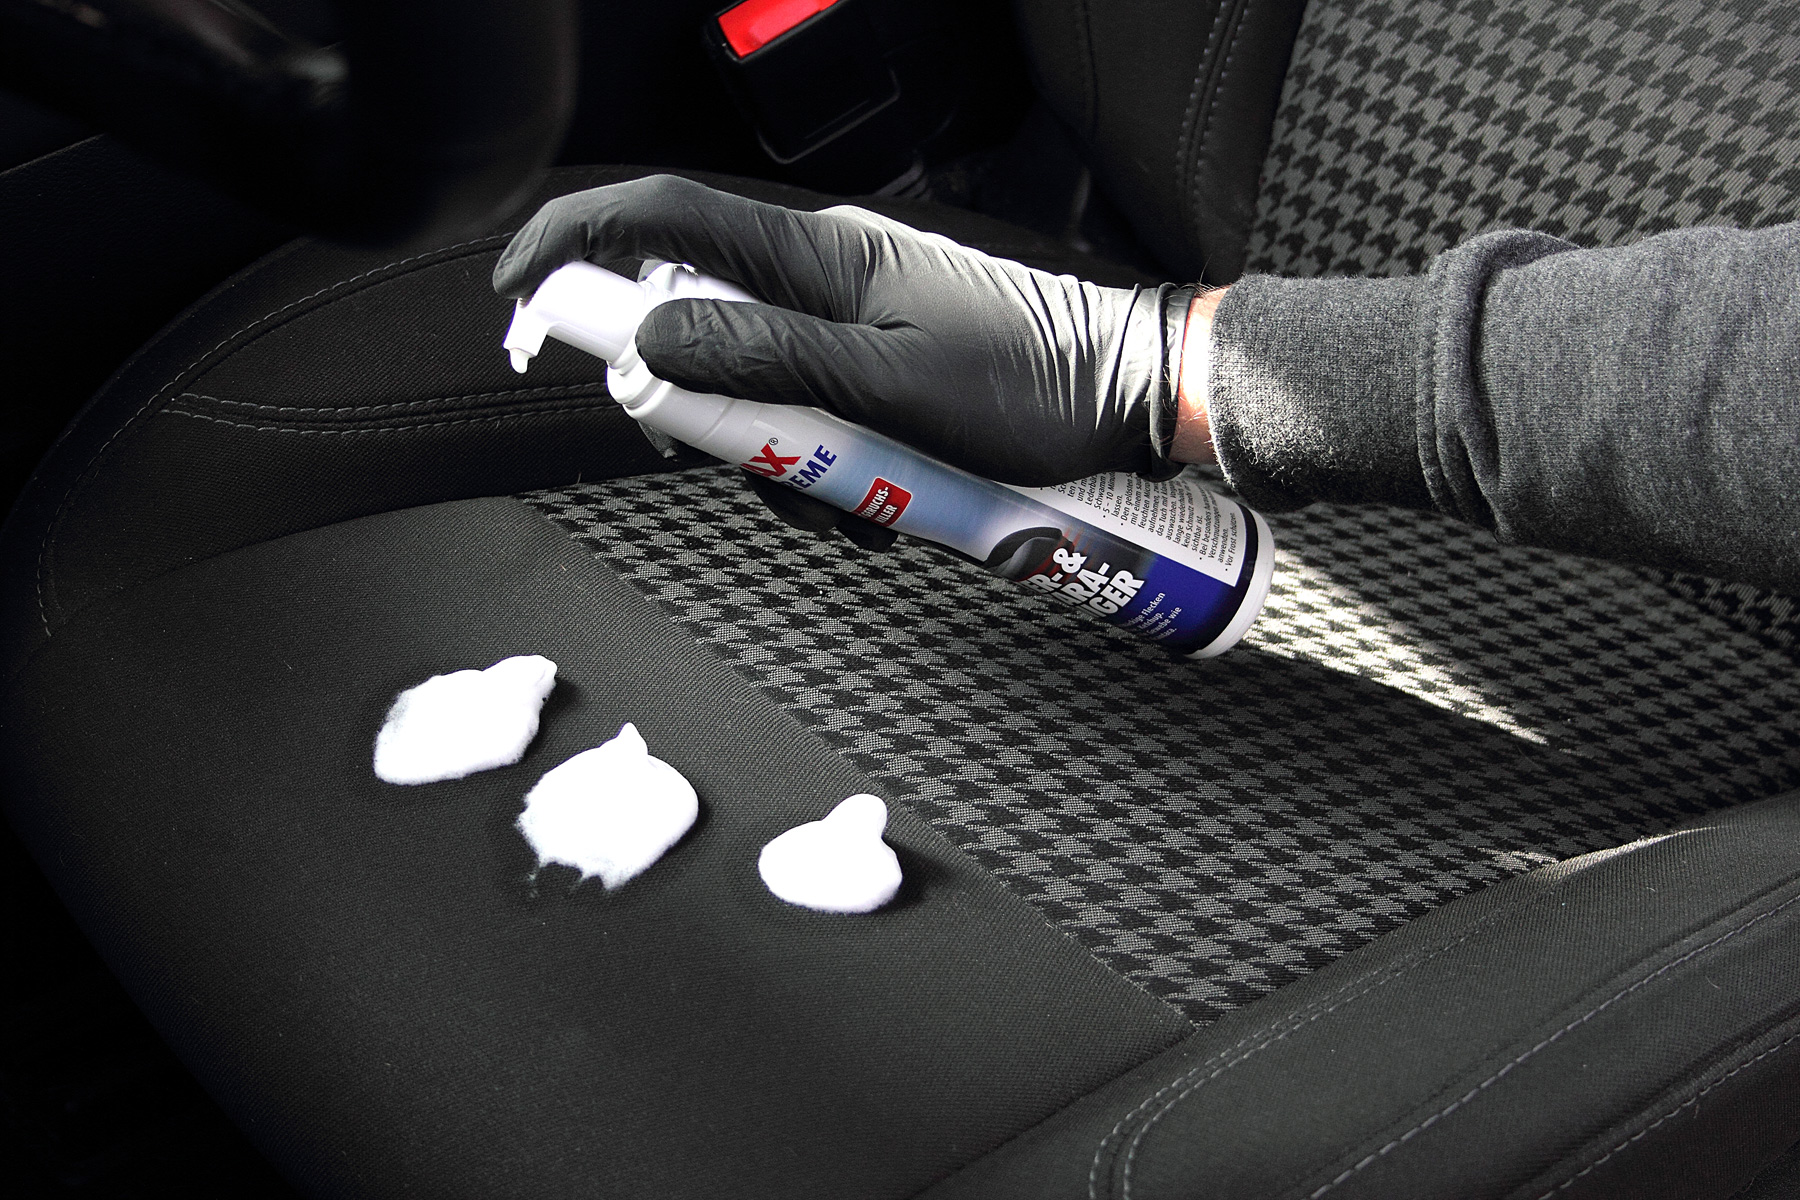 Sitzpolsterreinigung im Auto – gründlich, einfach, effektiv